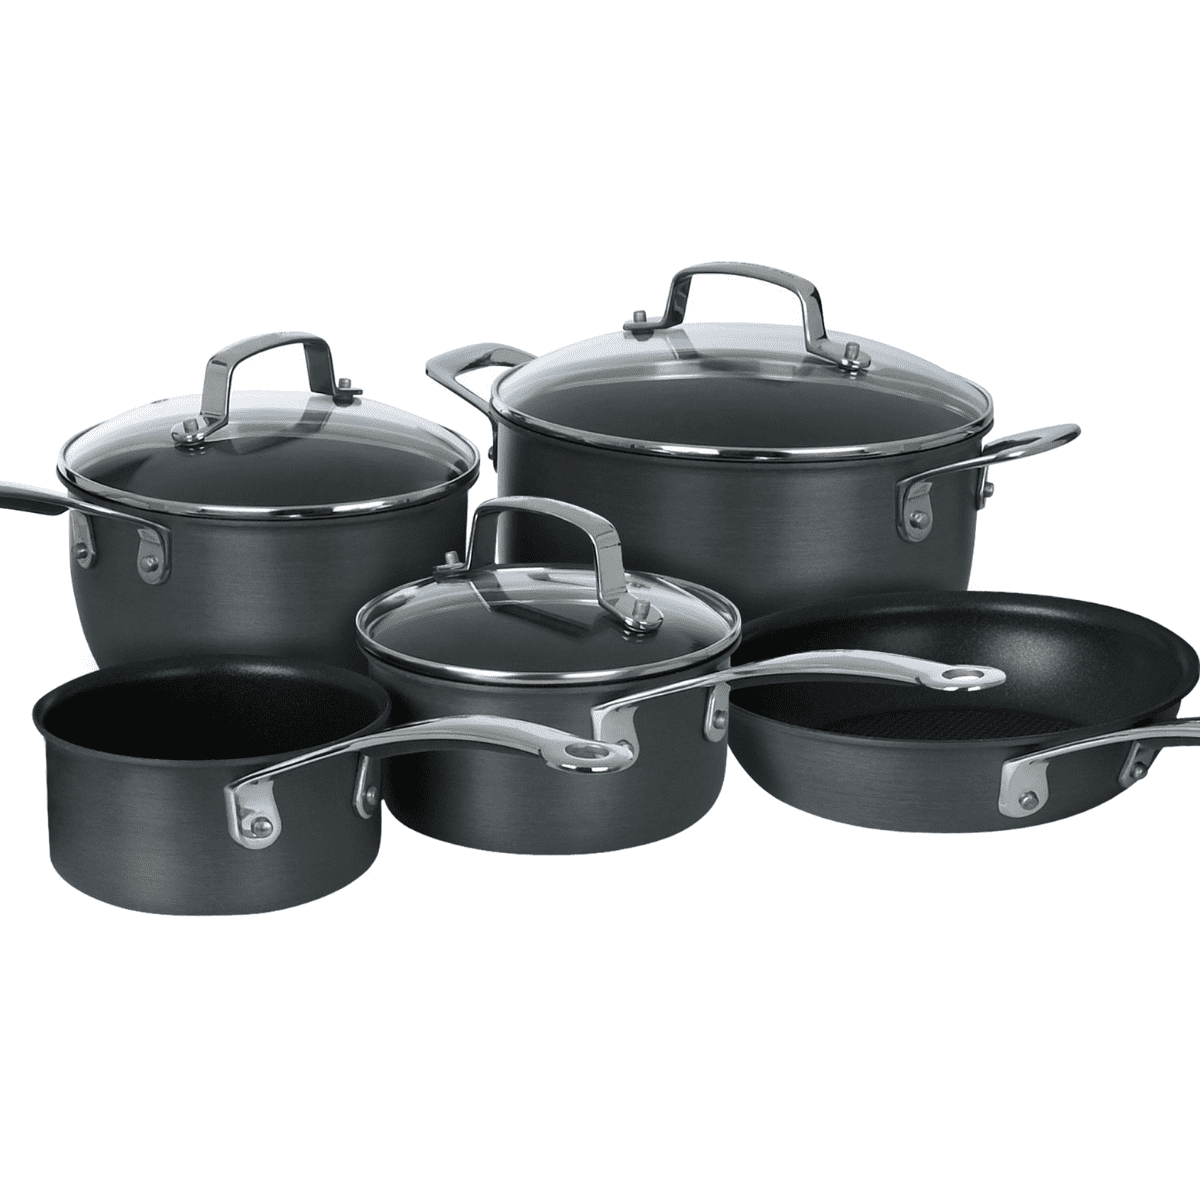 A set of black pots and pans.